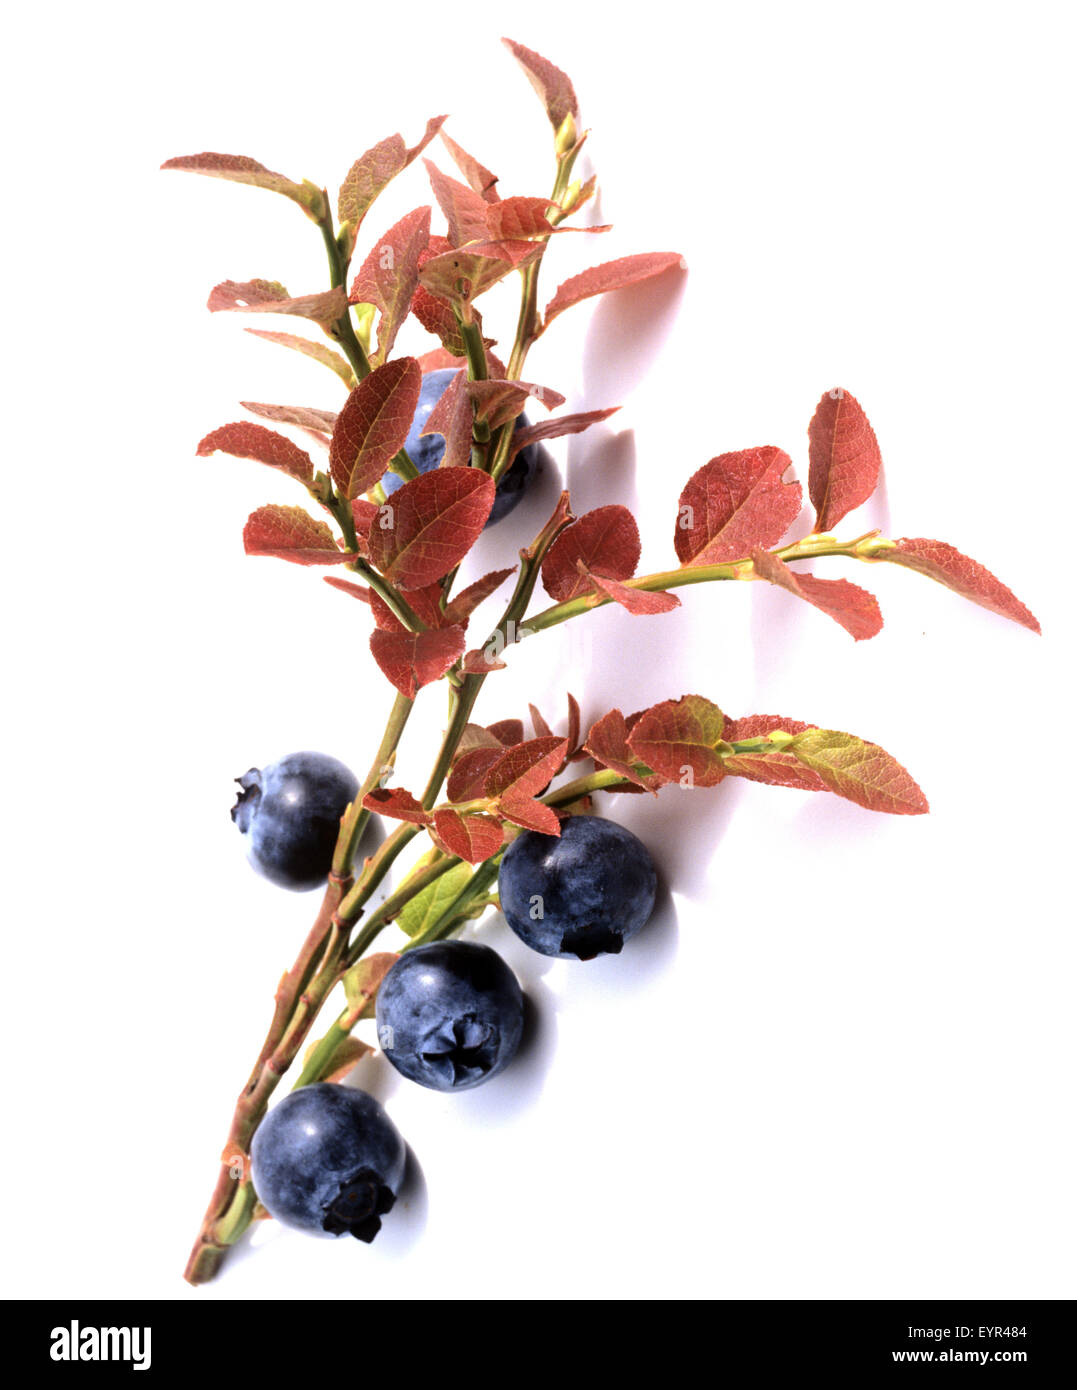 Heidelbeeren, Heidelbeere, blaue Beeren, Blaubeeren, Heilpflanzen, Fruechte, Obst, Foto Stock